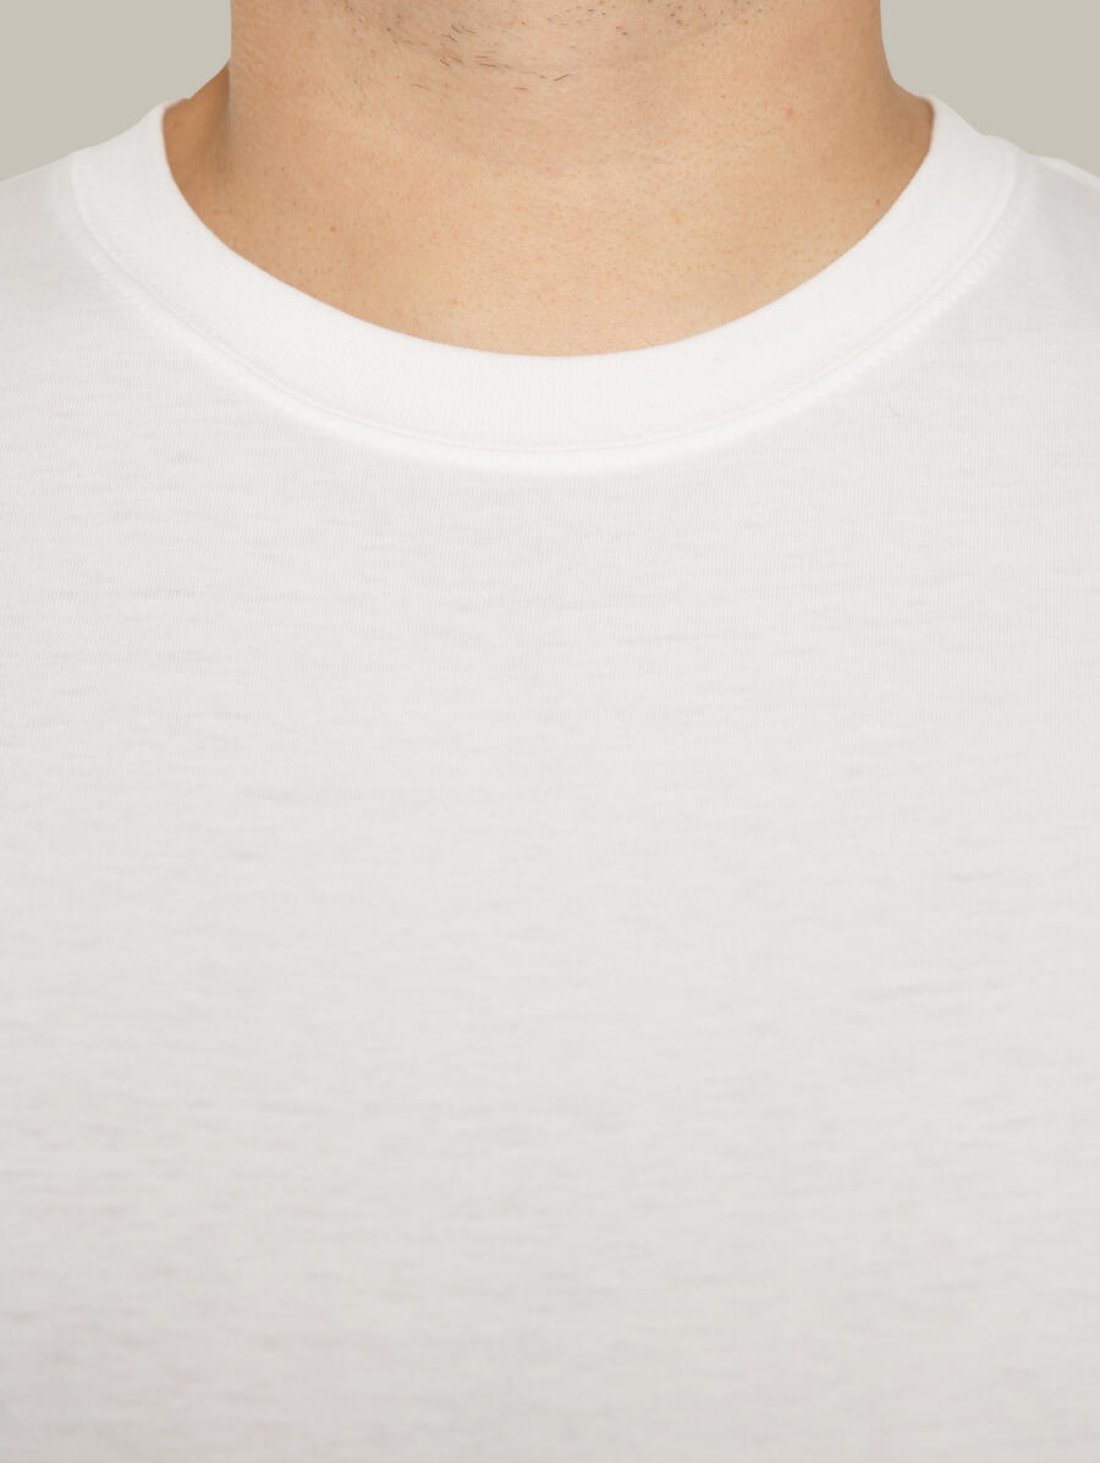 Чоловіча футболка, біла з принтом аватара Hopper 029